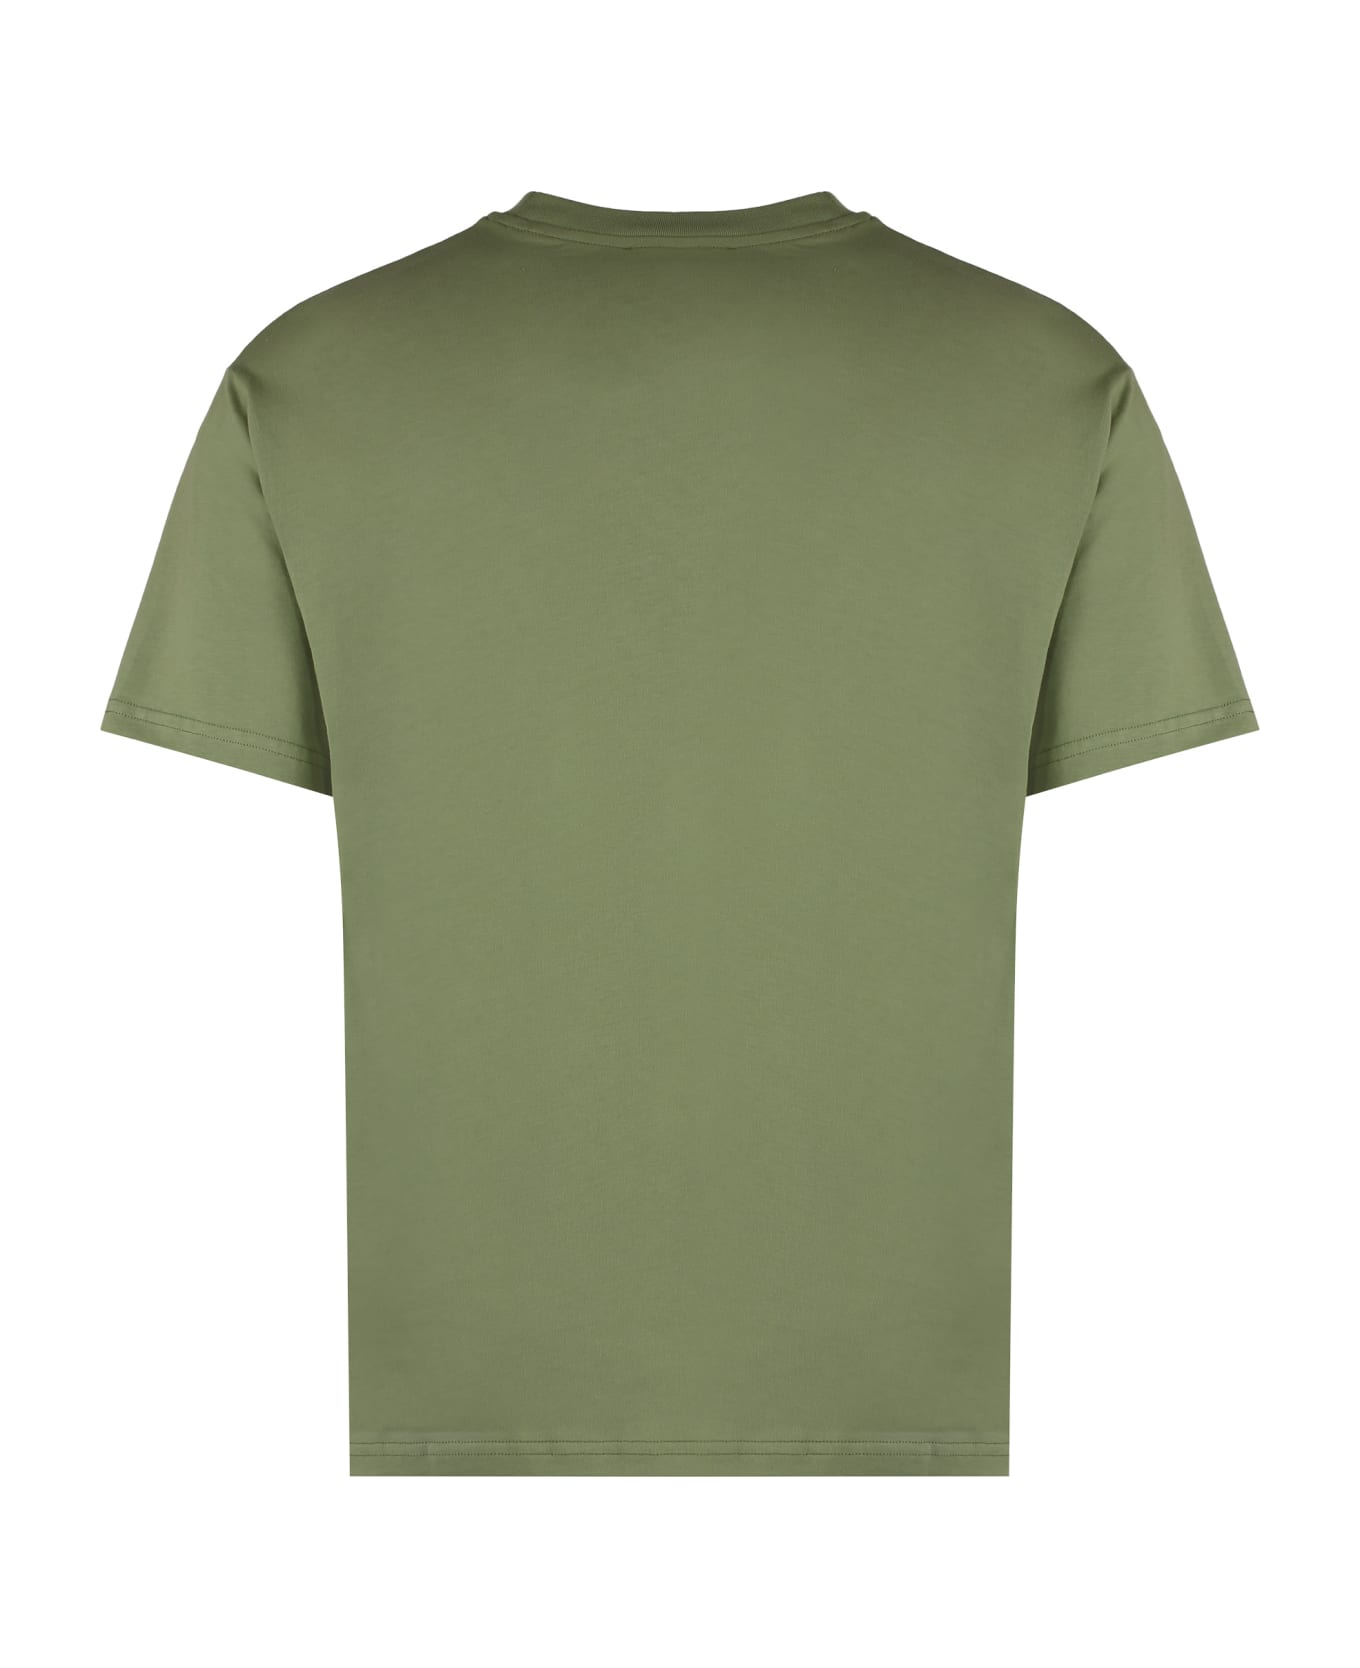 A.P.C. Kyle Logo T-shirt - green